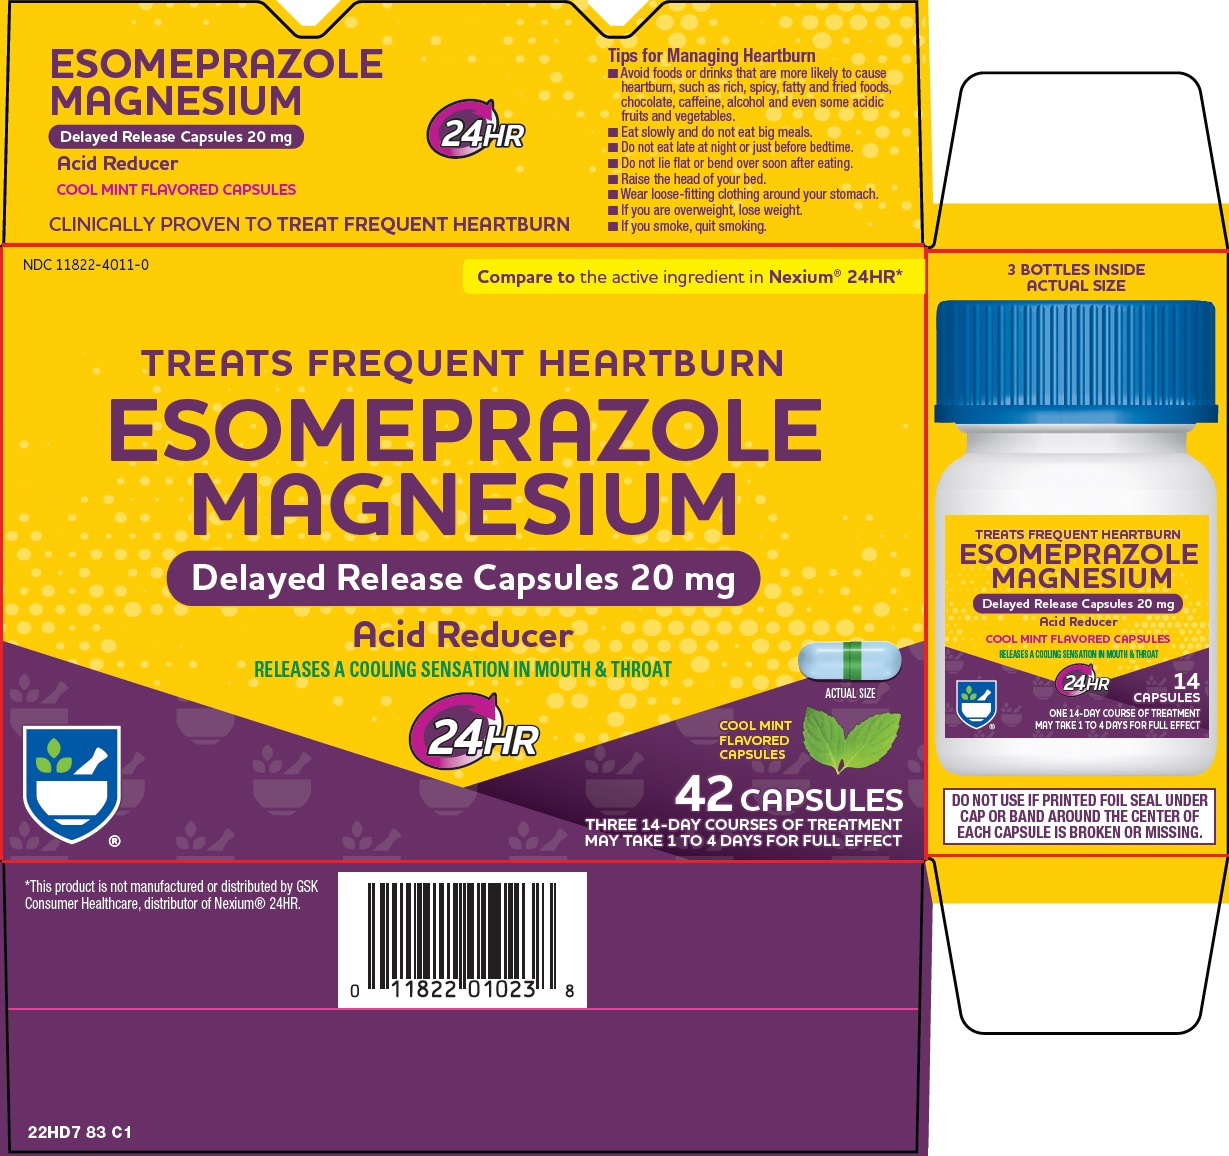 22h-83-esomeprazole-magnesium-1